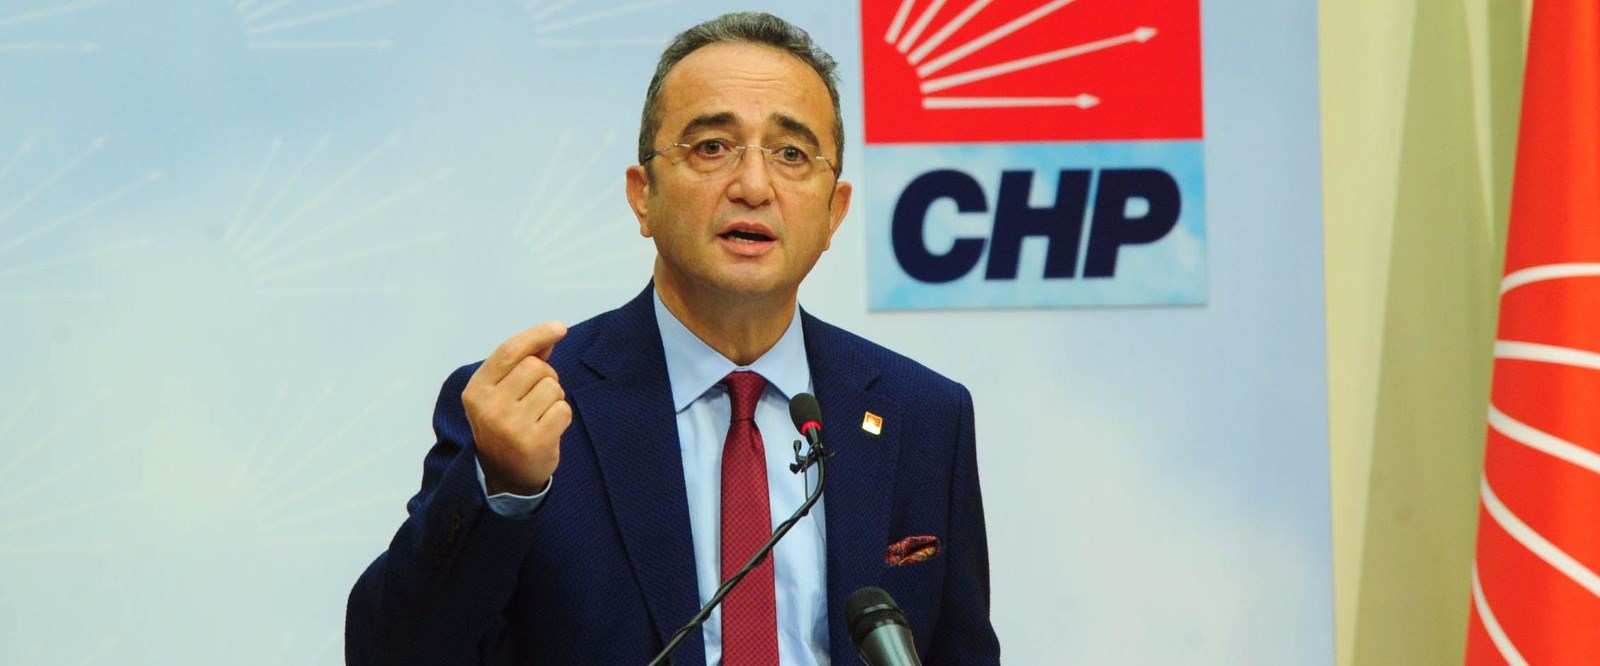 CHP Sözcüsü Bülent Tezcan’dan Zeytin Dalı Harekatı açıklaması